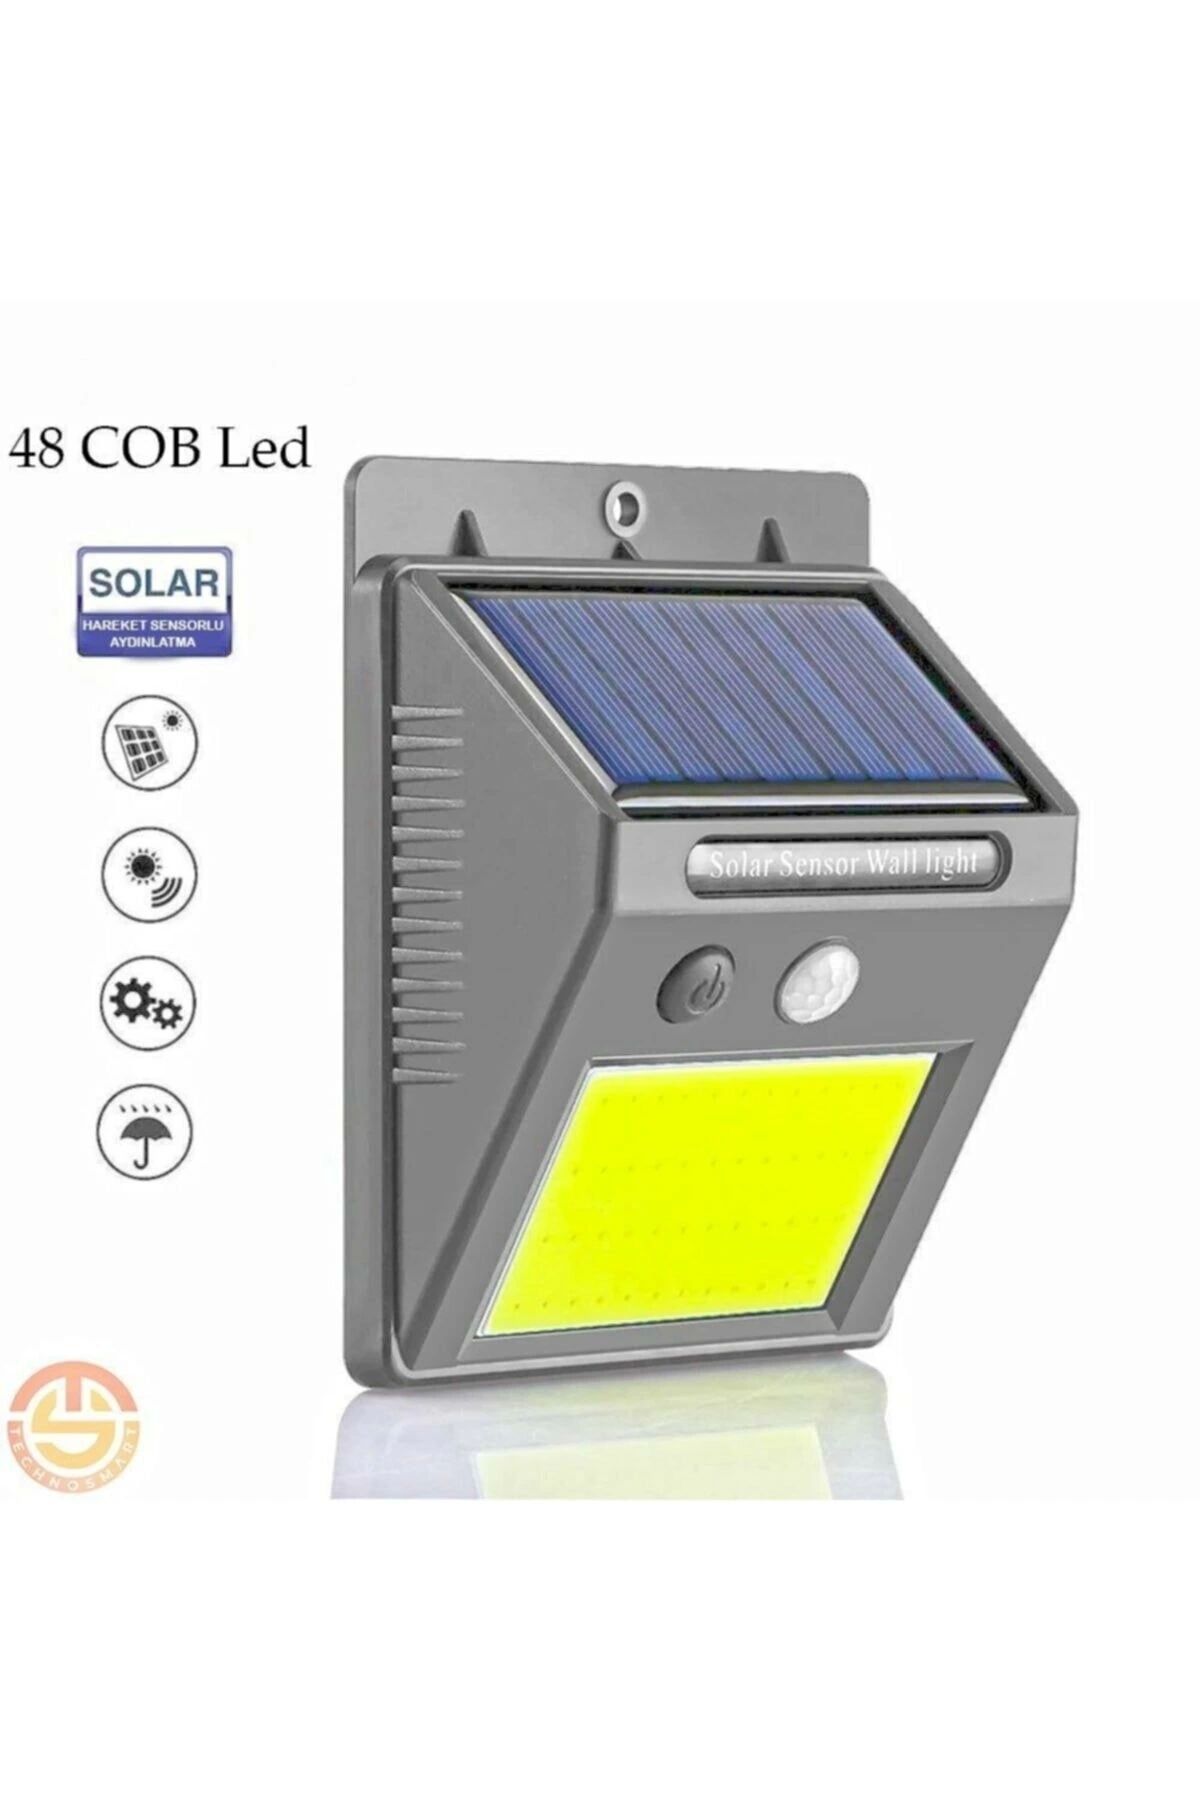 COMFONİ 48 Ledli Güneş Enerjili Bahçe Lambası Solar Hareket Sensörlü